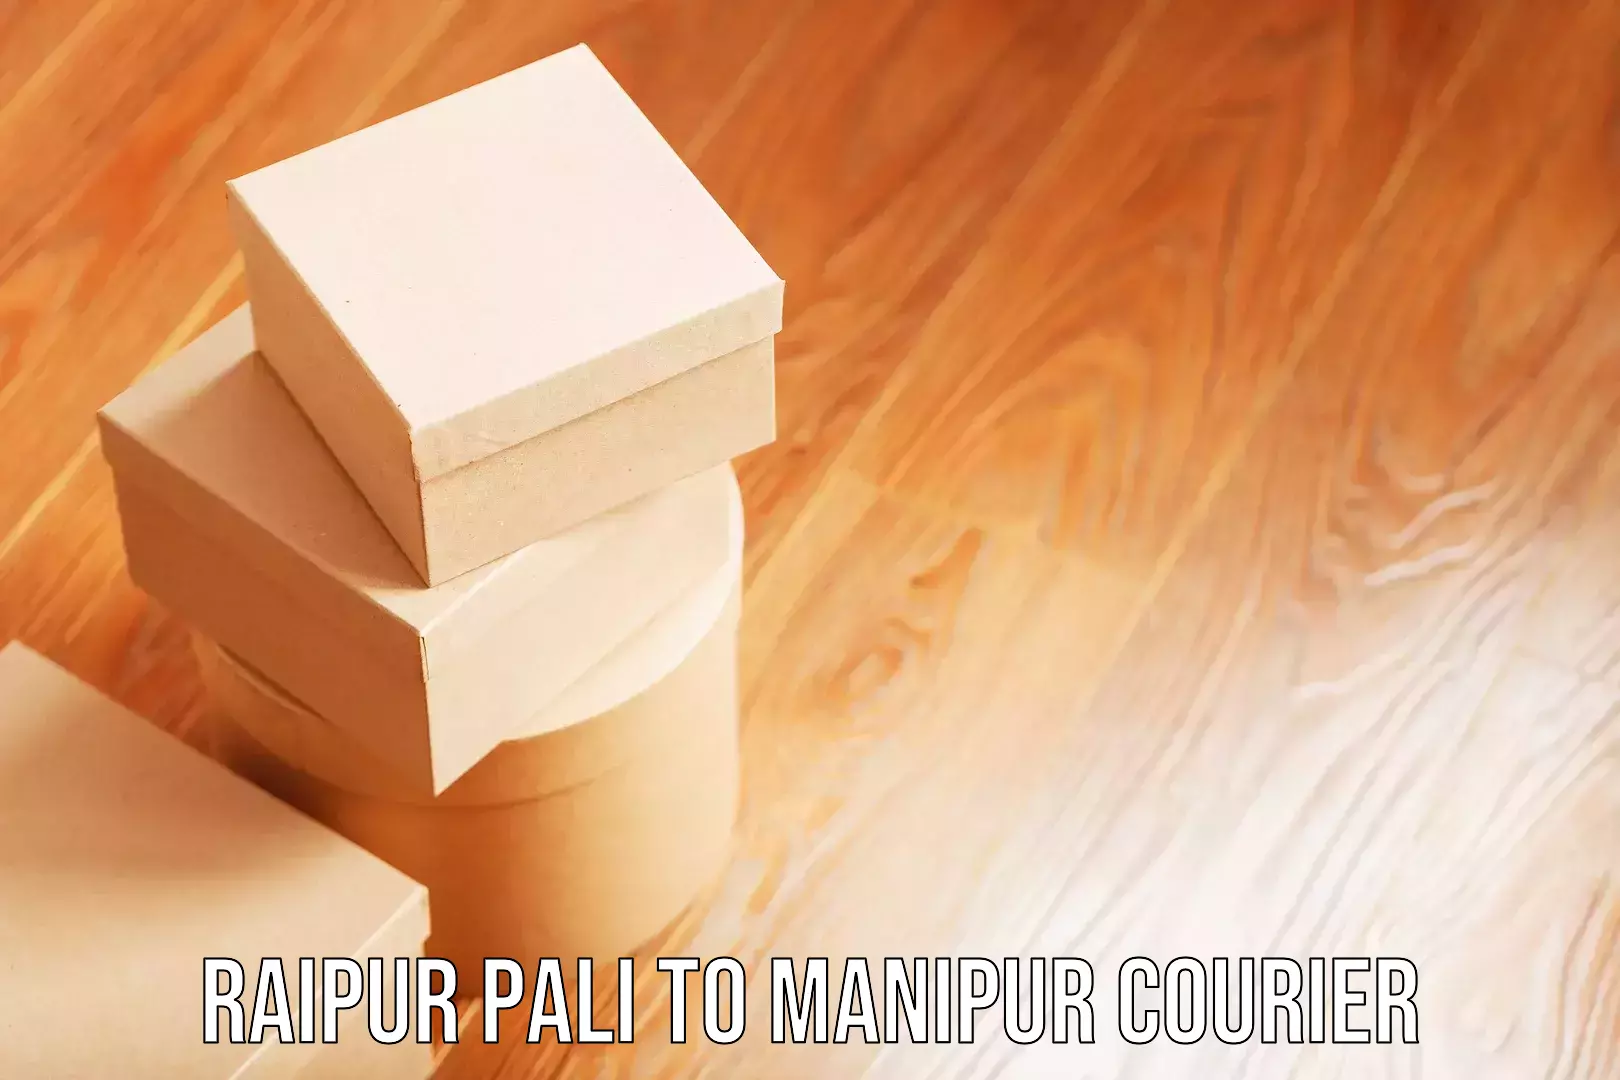 Luggage delivery providers Raipur Pali to IIIT Senapati